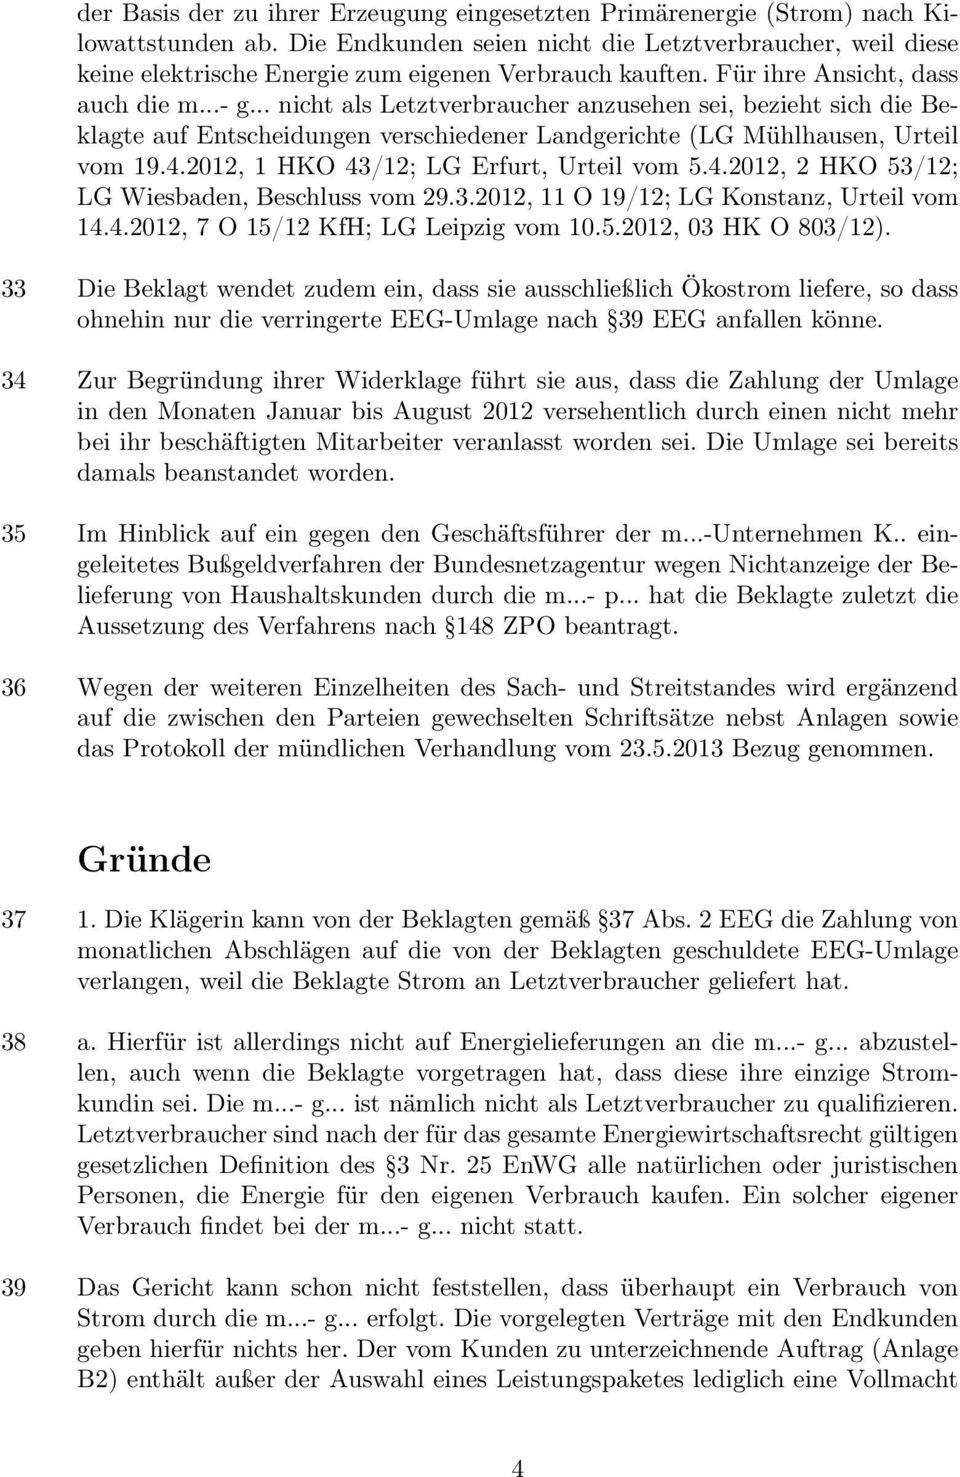 .. nicht als Letztverbraucher anzusehen sei, bezieht sich die Beklagte auf Entscheidungen verschiedener Landgerichte (LG Mühlhausen, Urteil vom 19.4.2012, 1 HKO 43/12; LG Erfurt, Urteil vom 5.4.2012, 2 HKO 53/12; LG Wiesbaden, Beschluss vom 29.